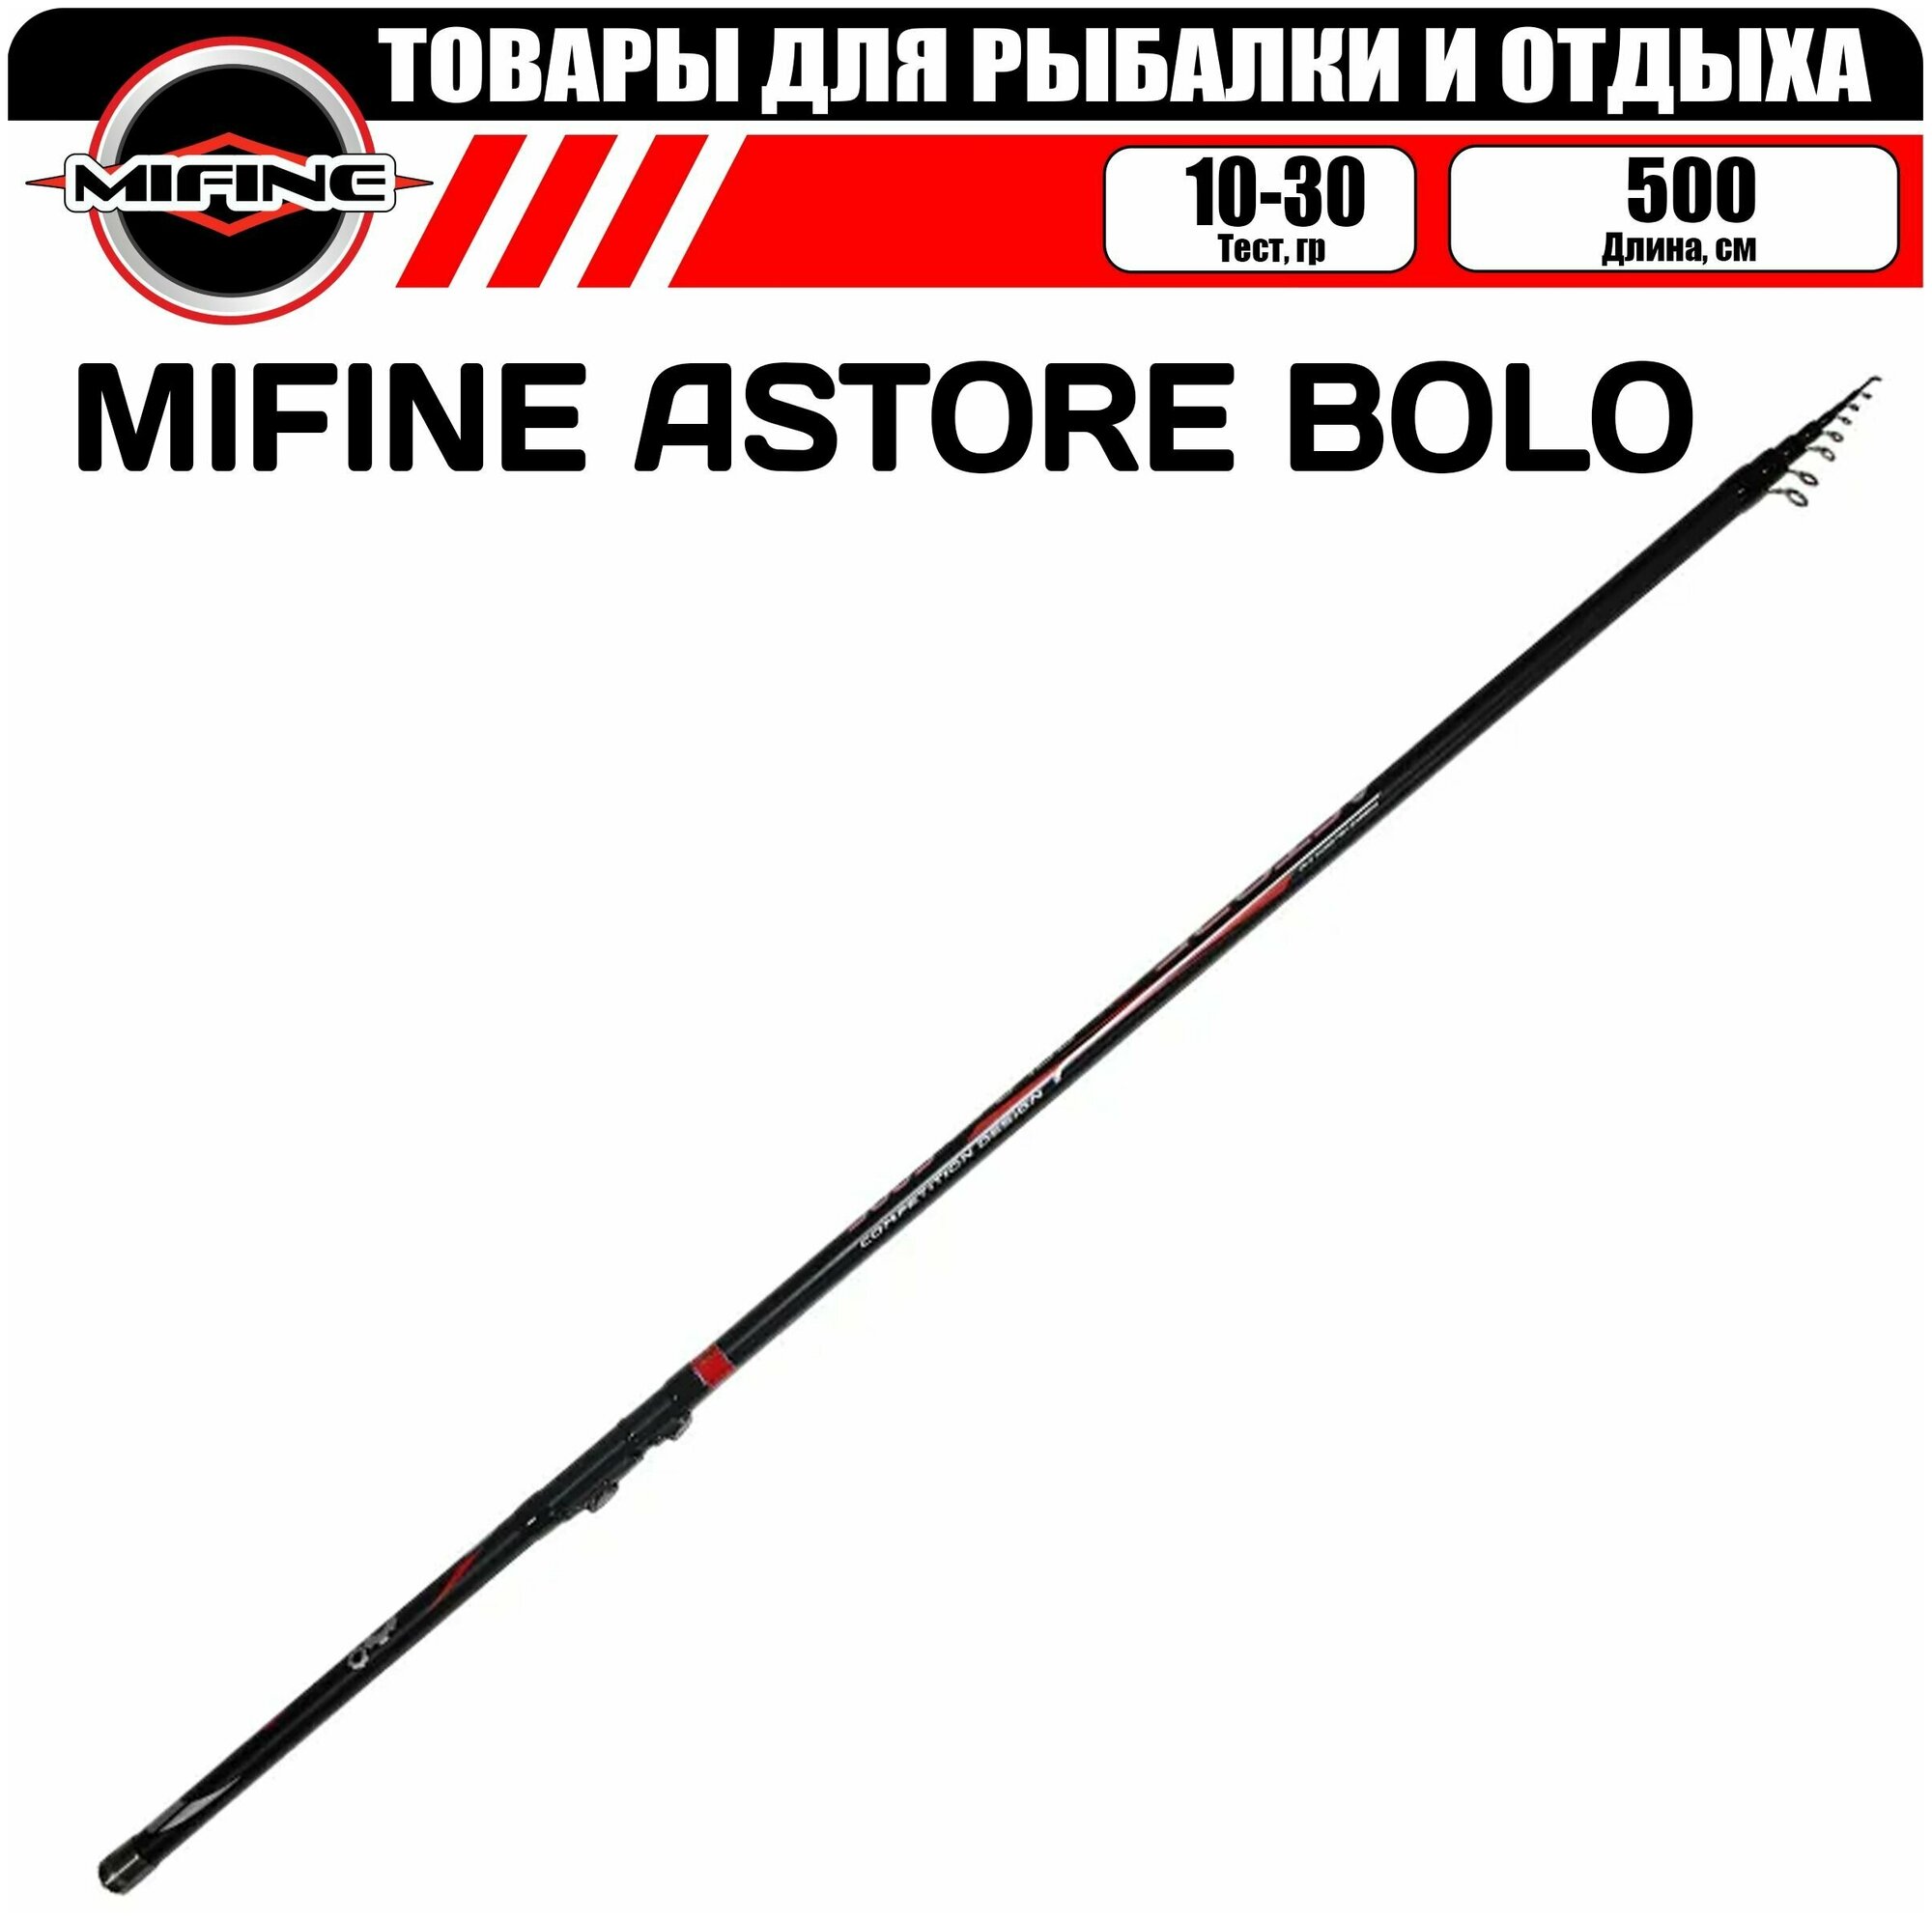 Удилище телескопическое MIFINE ASTORE BOLO С, К 5.0м (10-30гр), для рыбалки, рыболовное